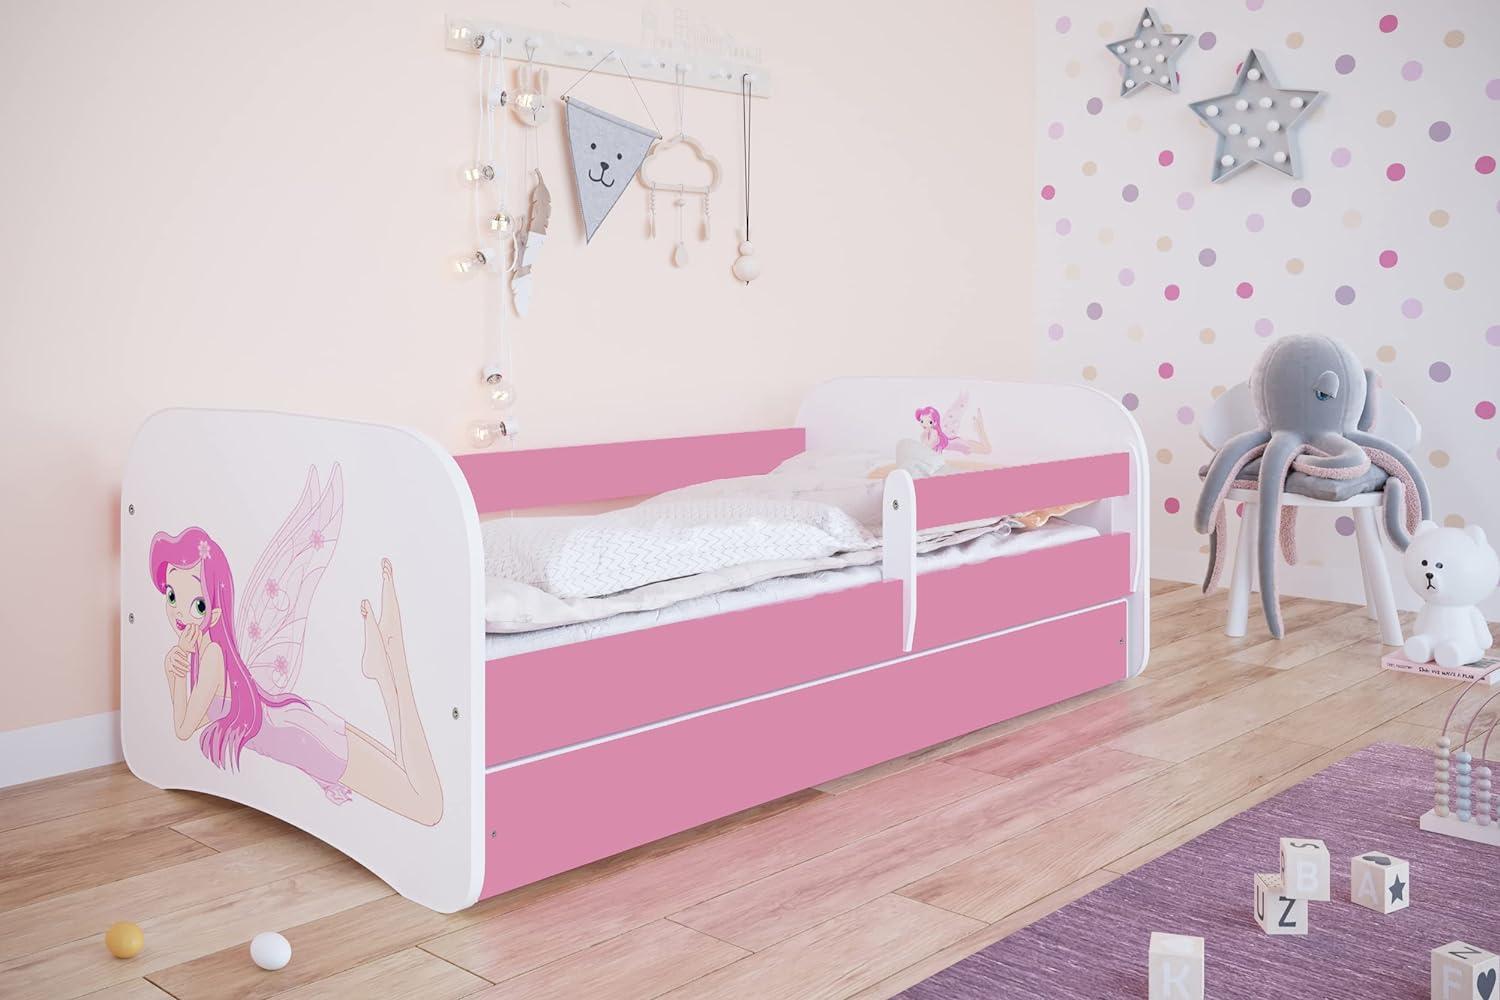 Kocot Kids 'Fee mit Flügeln' Einzelbett weiß 80x180 cm inkl. Rausfallschutz, Matratze, Schublade und Lattenrost Bild 1